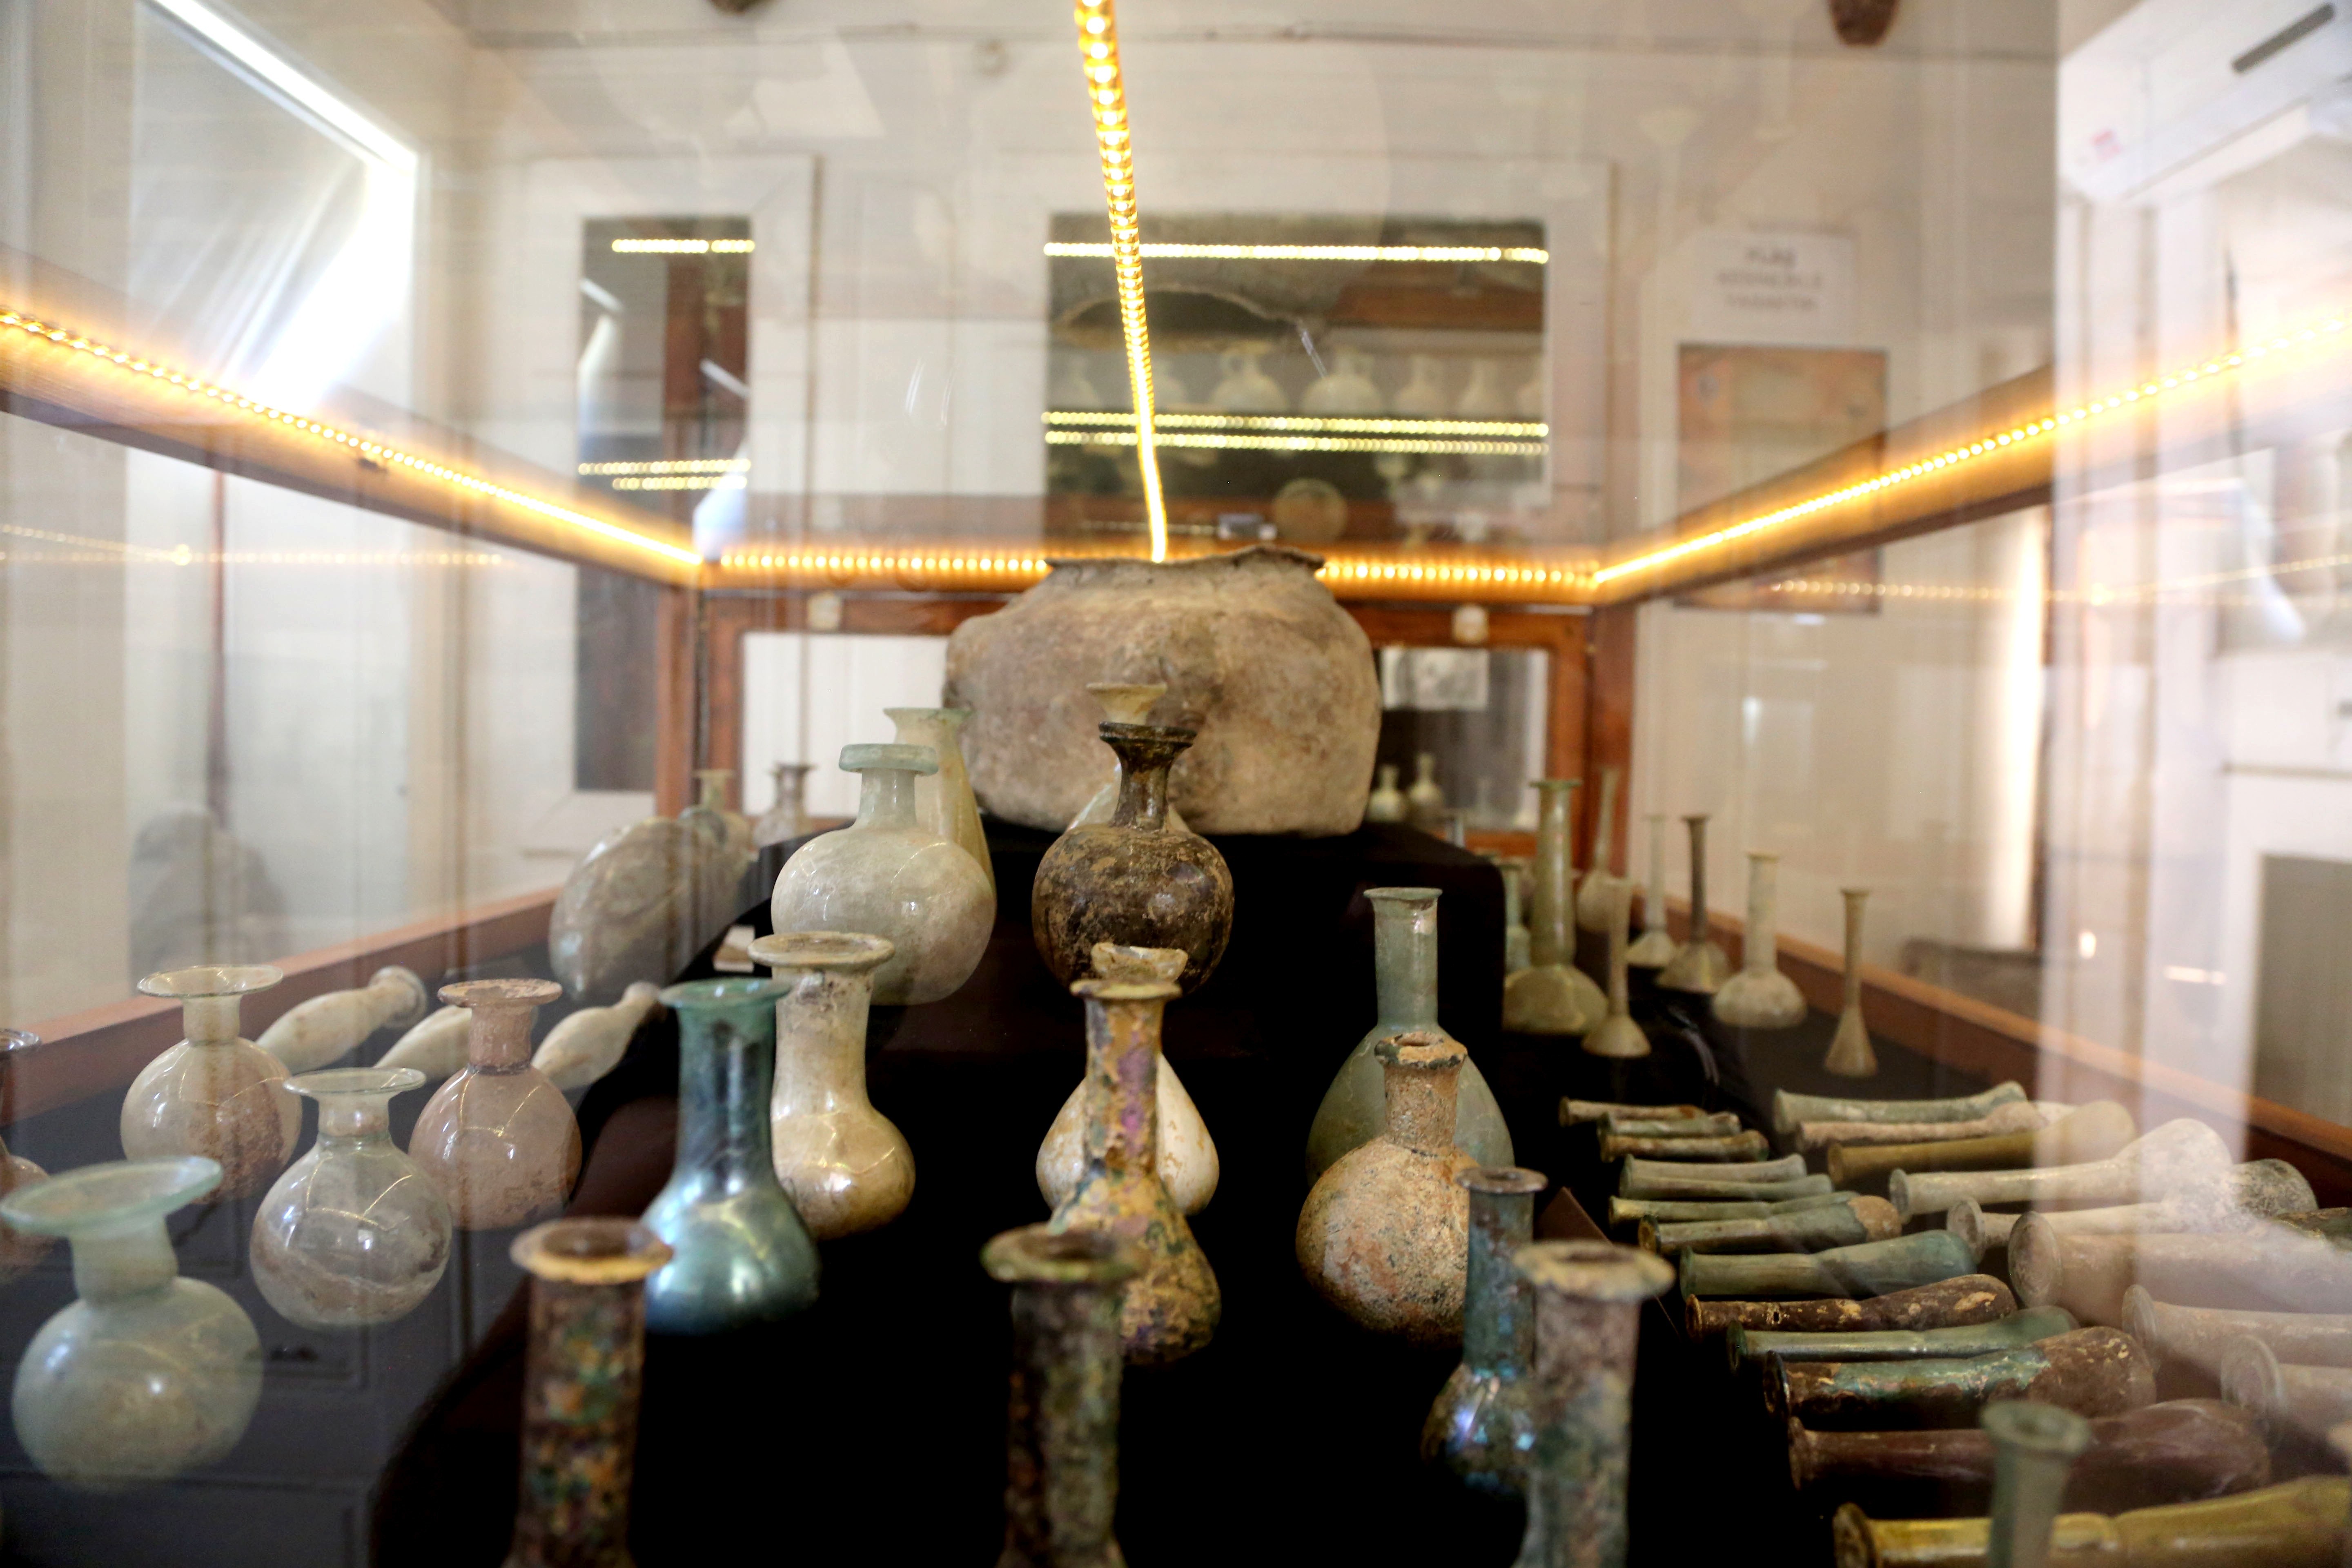 عدد المتاحف الخاصة في تركيا يفوق العامة لأول مرة.. ويقفز إلى 193 متحفا